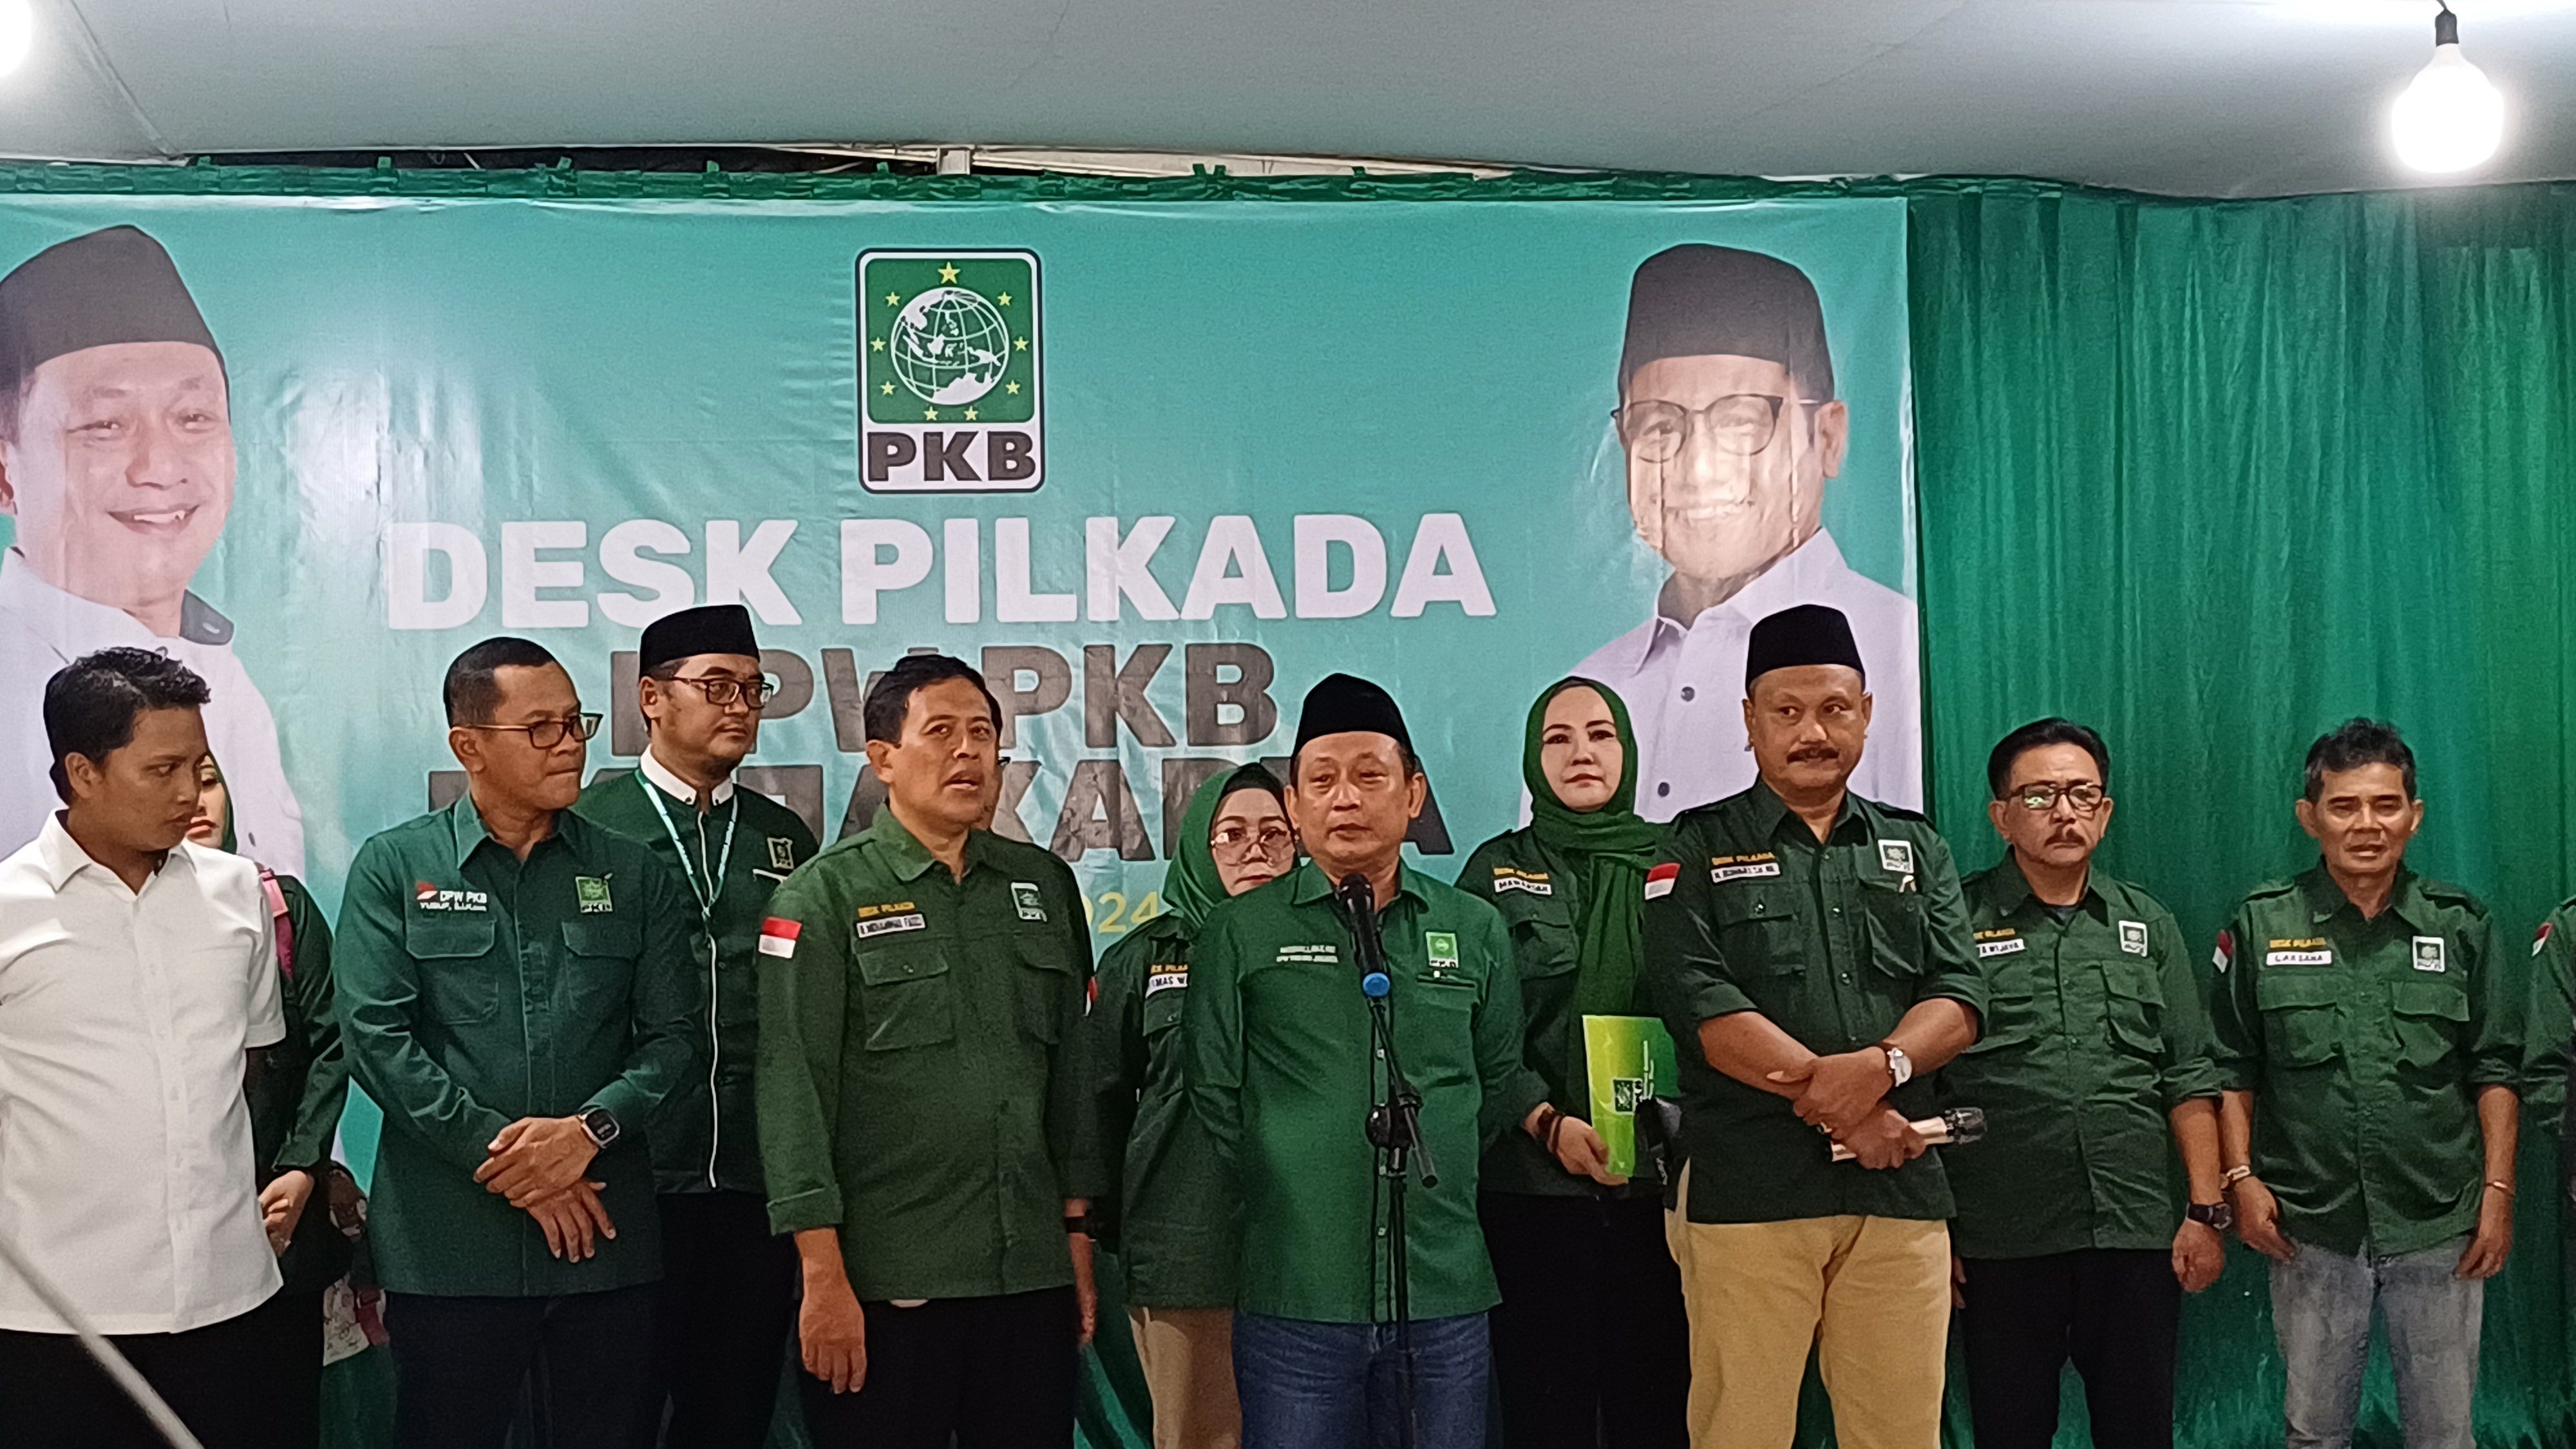 Usung Anies Baswedan sebagai Cagub Jakarta, DPW PKB: Sudah Uji Kelayakan dan Kepatutan